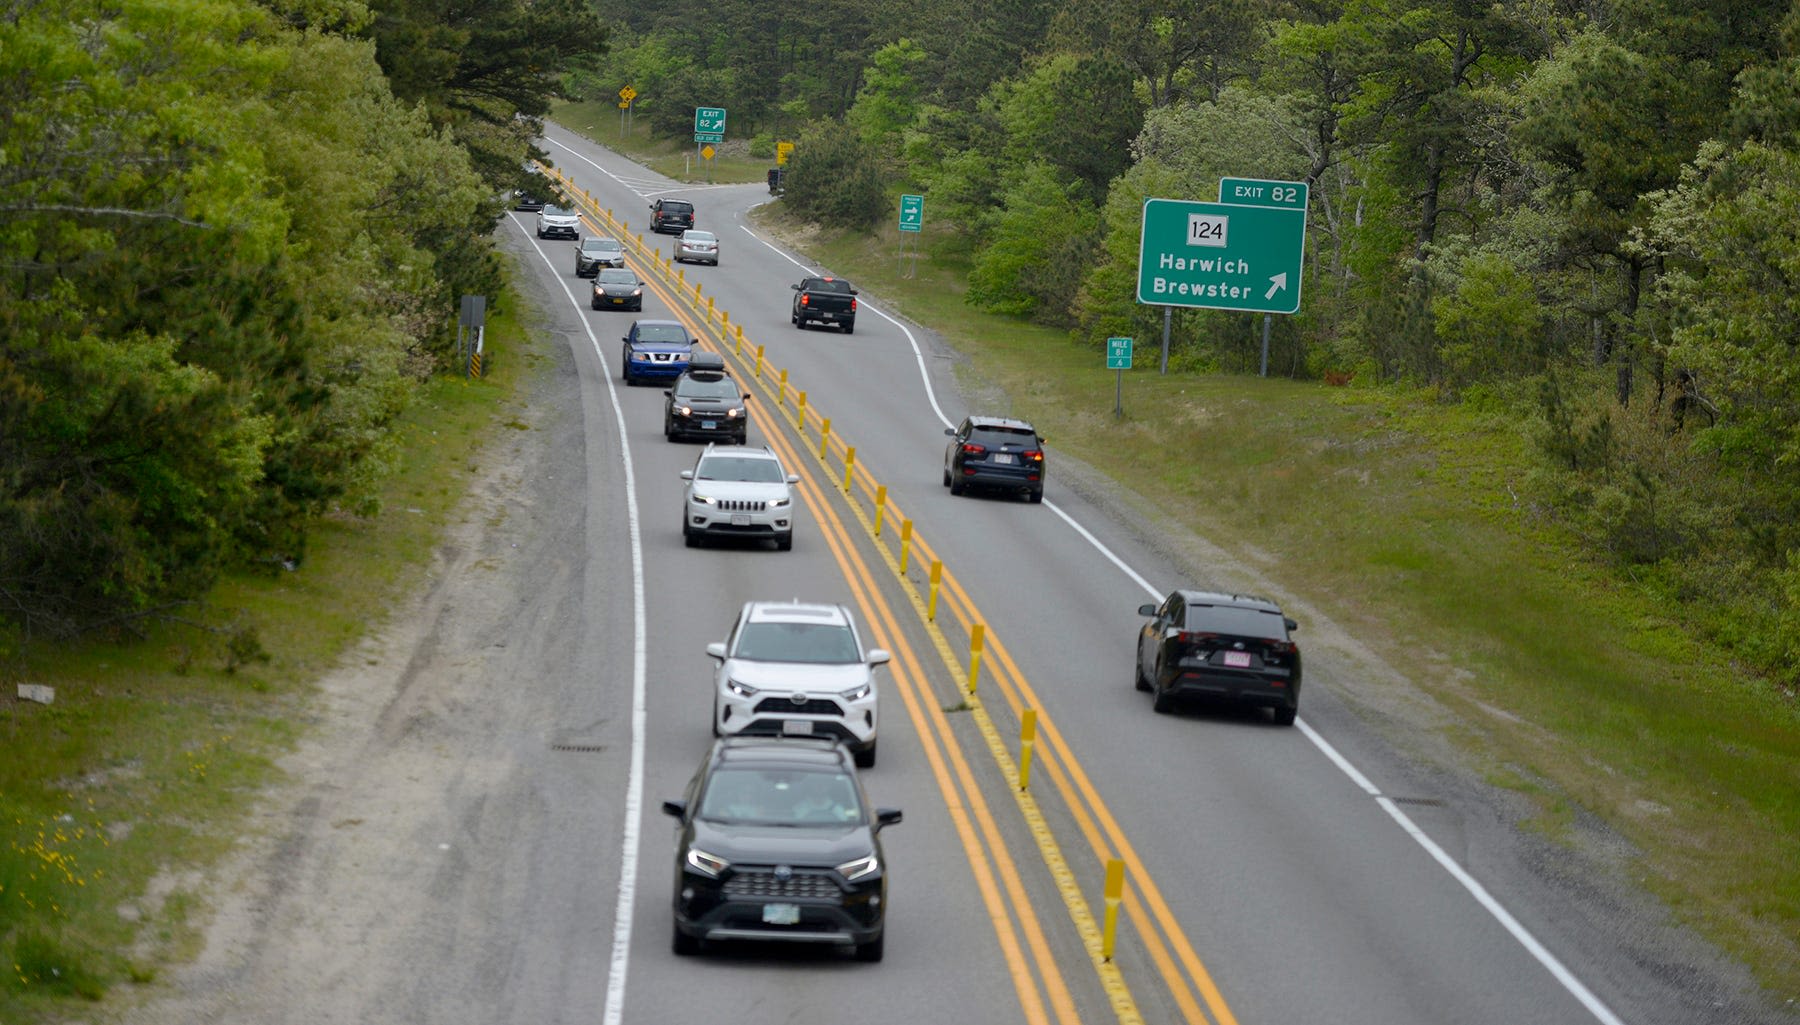 Cape Cod Memorial Day traffic updates: Delays at the bridges?